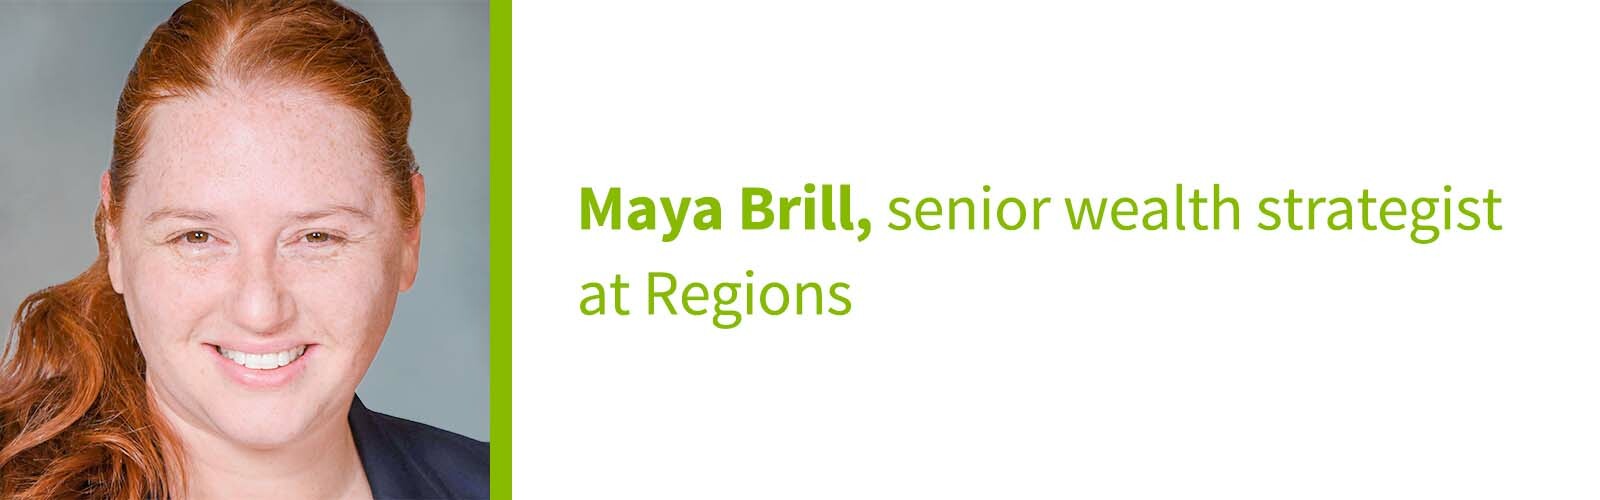 Maya Brill, senior wealth strategist at Regions